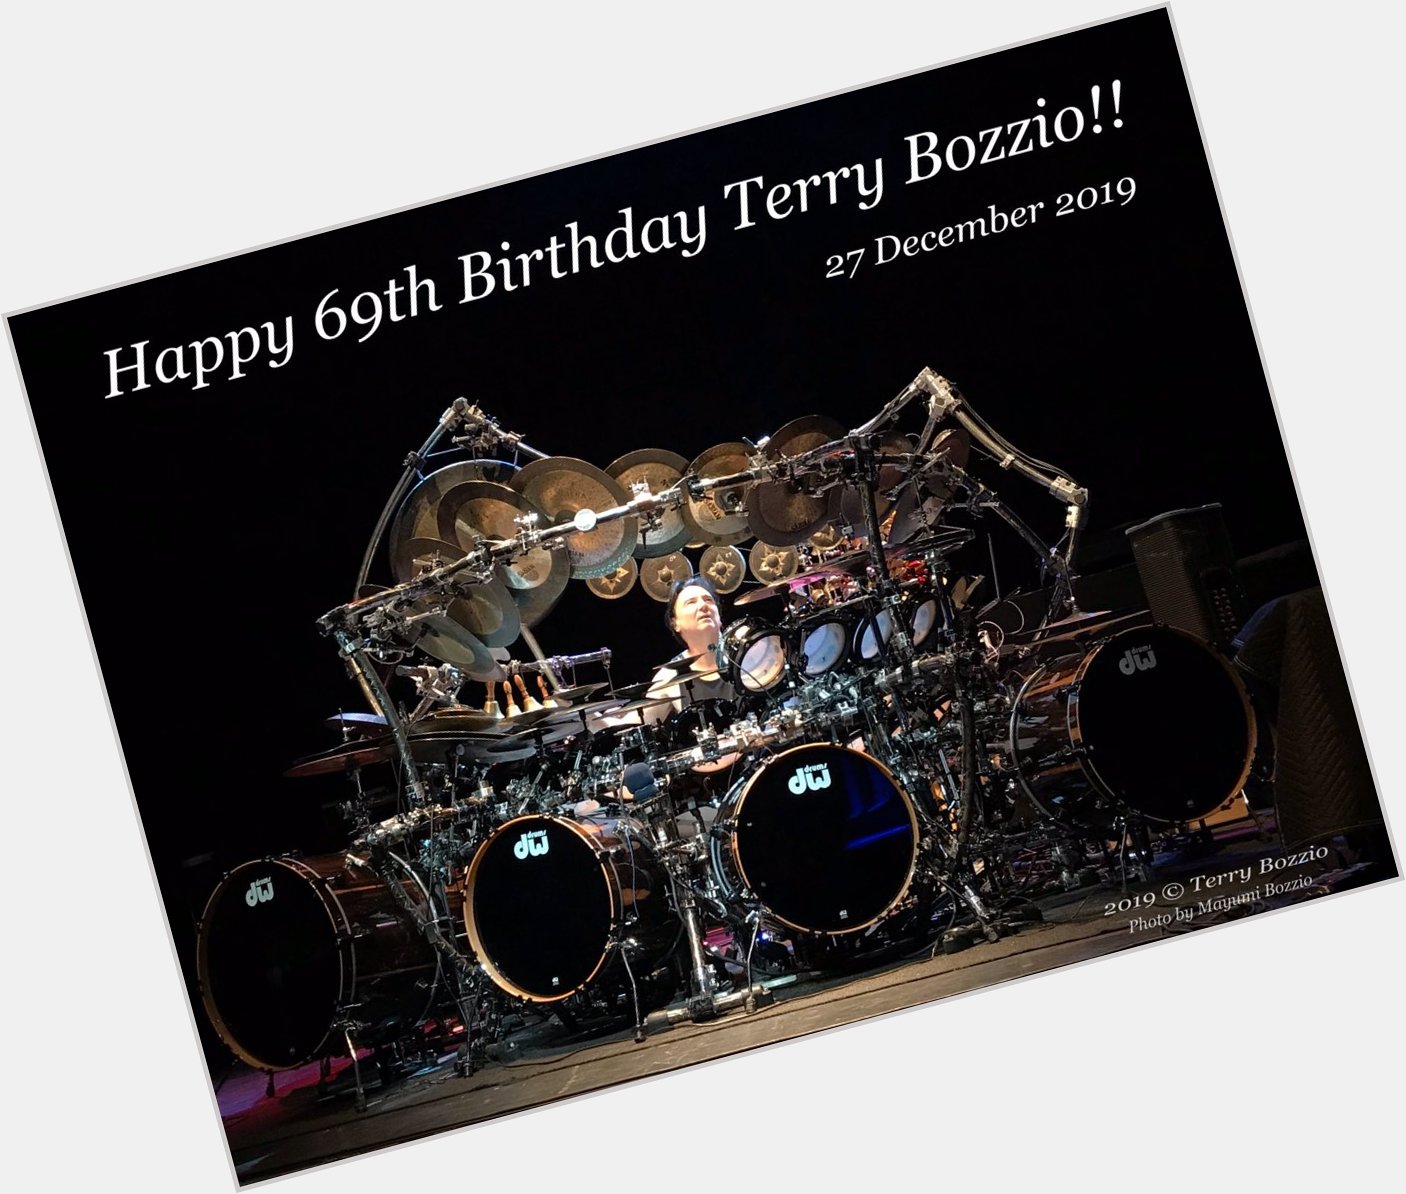 Happy 69th Birthday!
Terry Bozzio was born 27 December in 1950.  